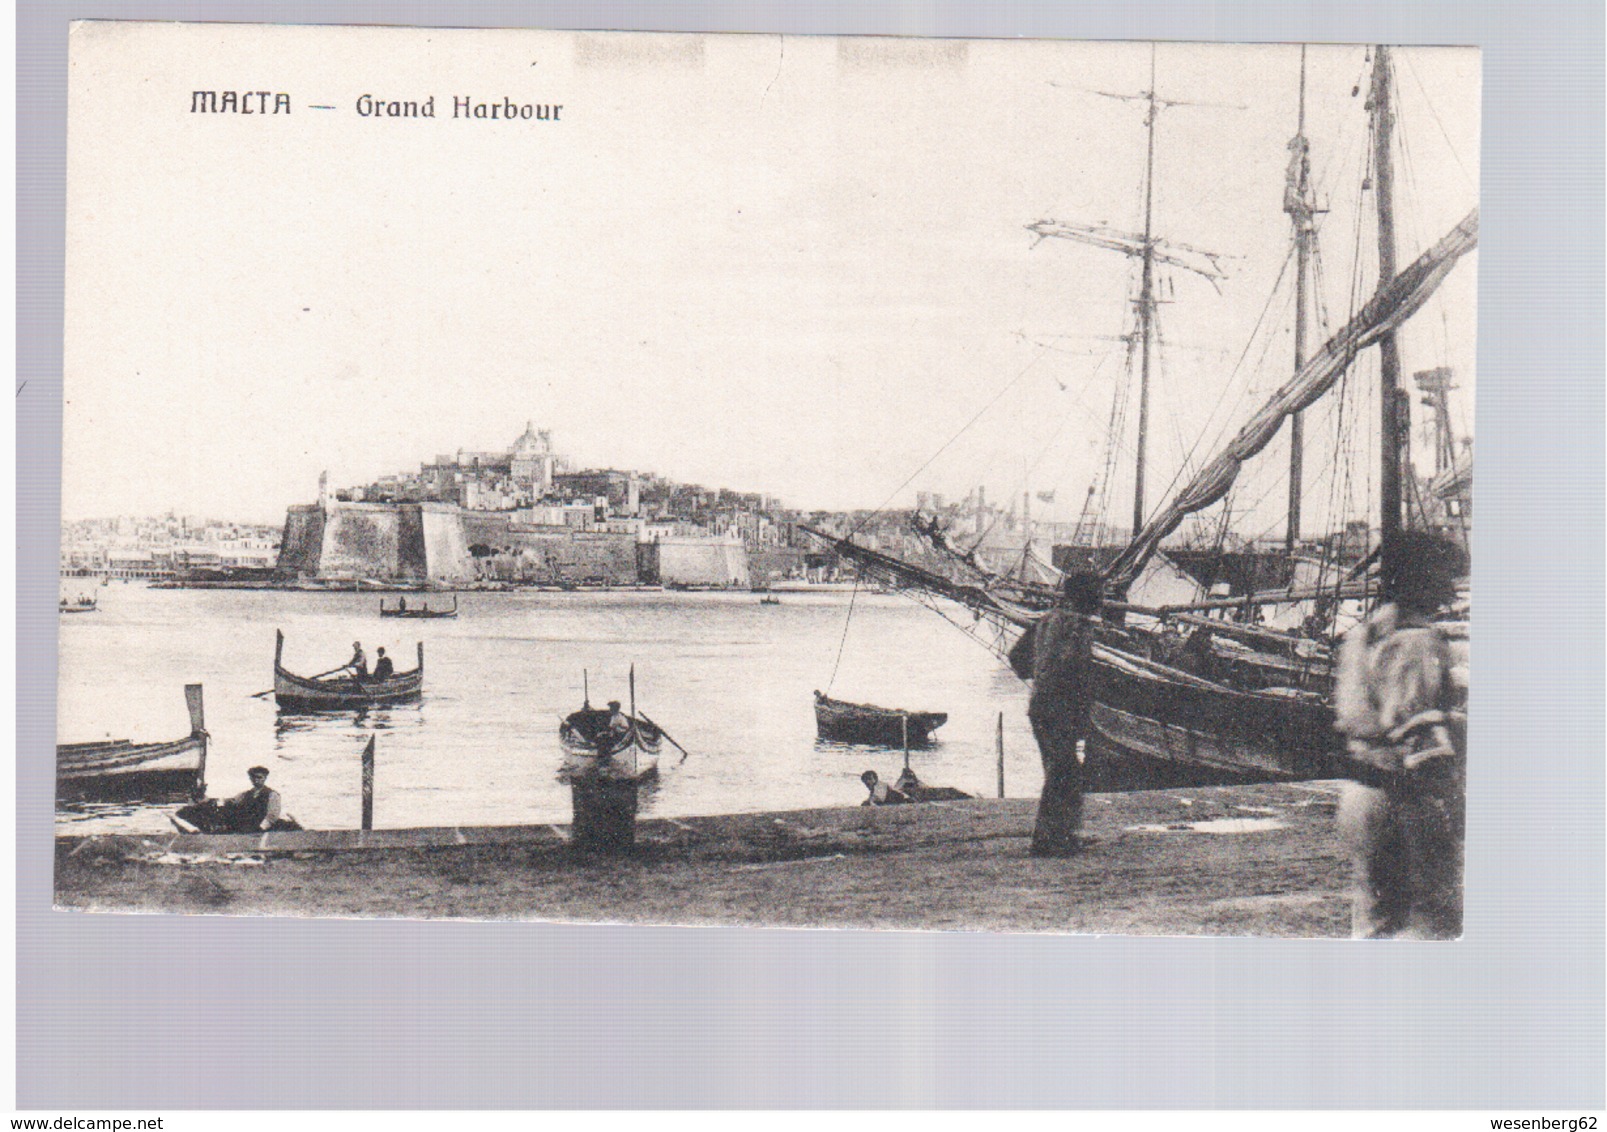 MALTA Grand Harbour Ca 1920 Old Postcard - Malta